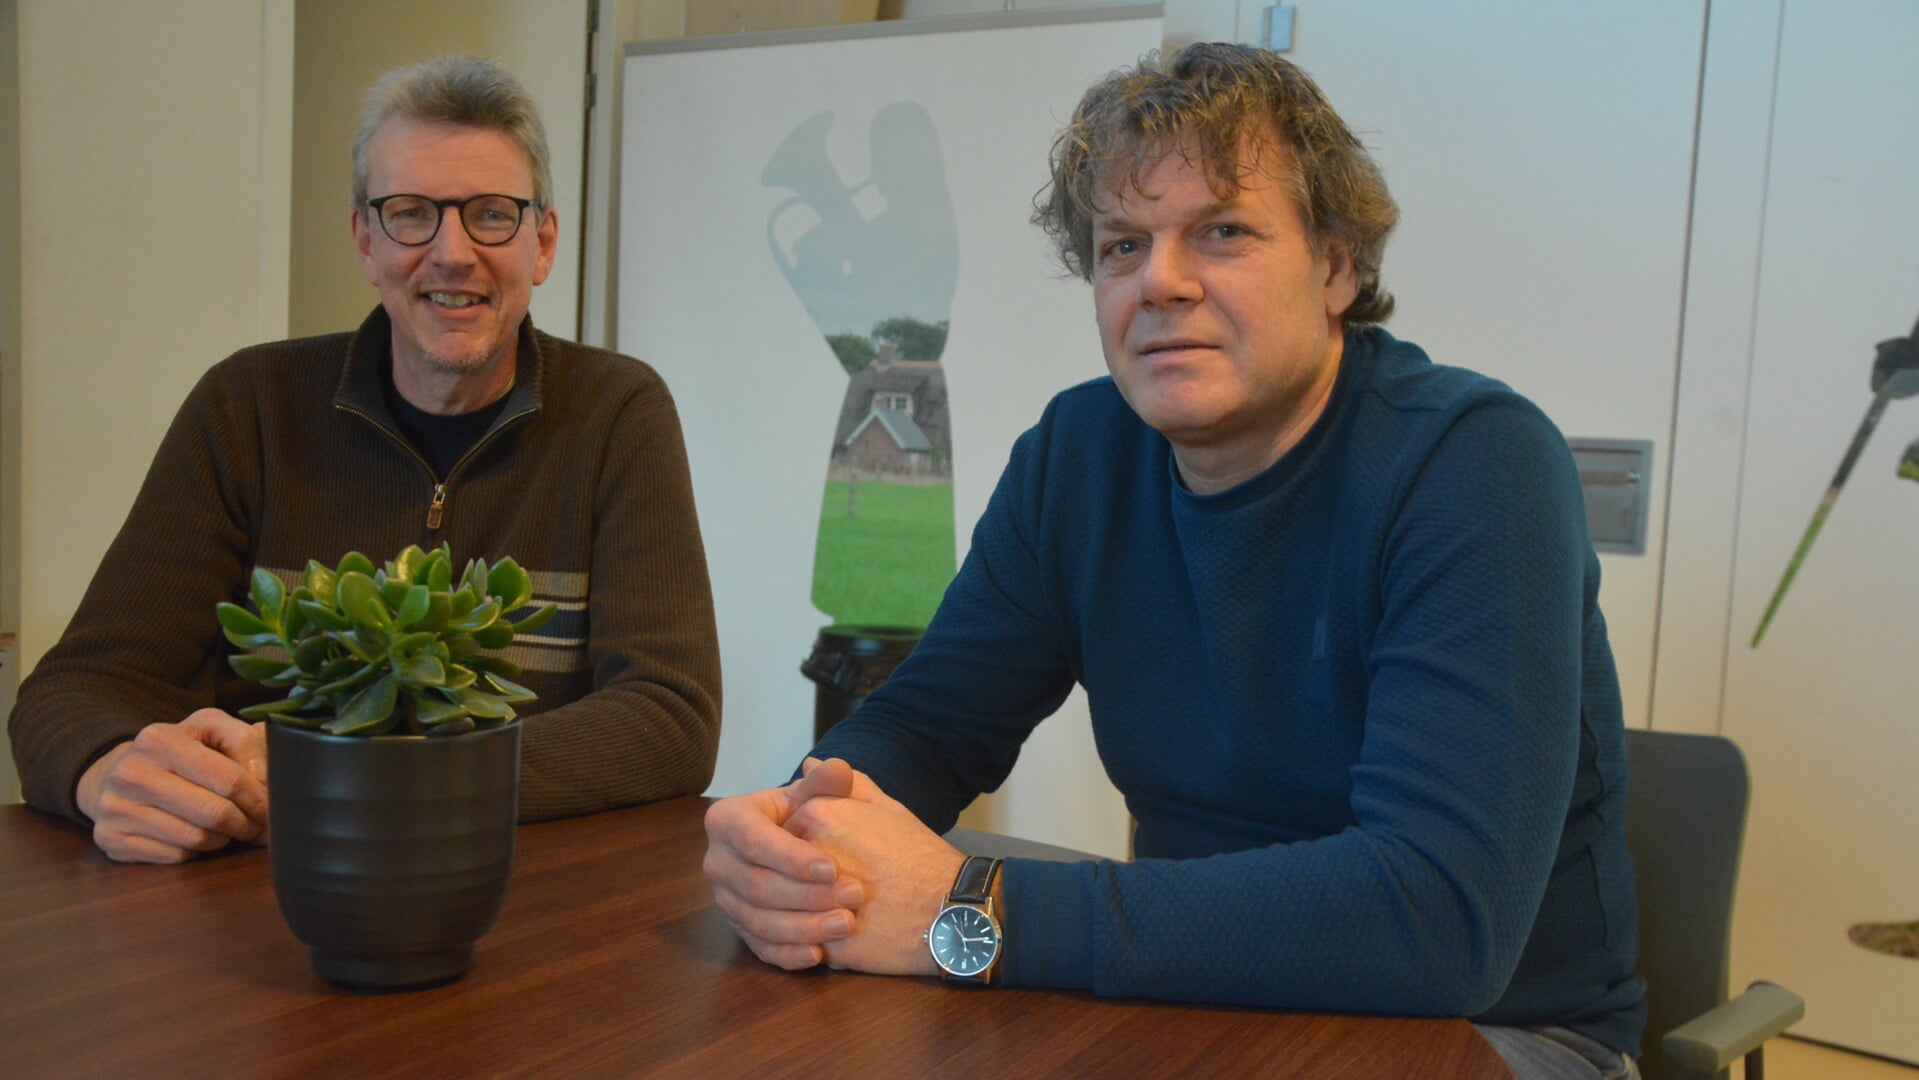  Martin van der Zwan (links) en Kees van den Bosch zitten boordevol plannen. Foto: Dick van der Veen 